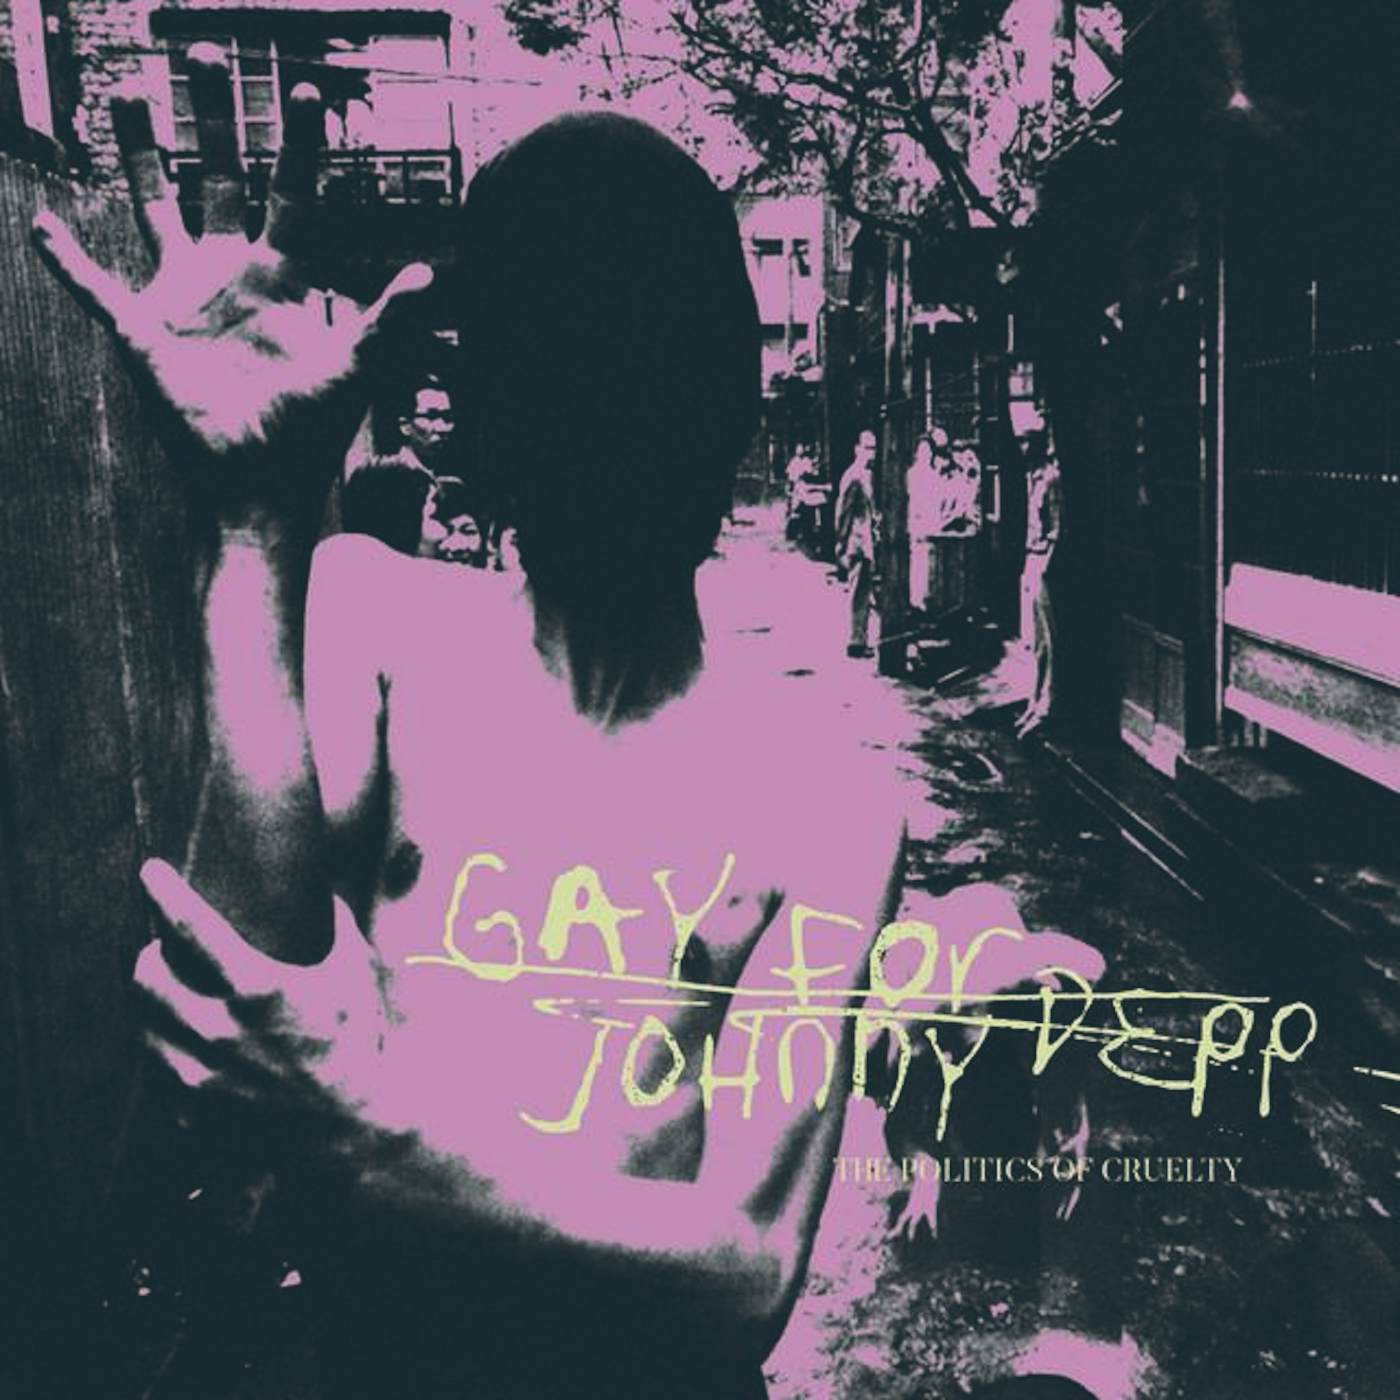 Gay For Johnny Depp